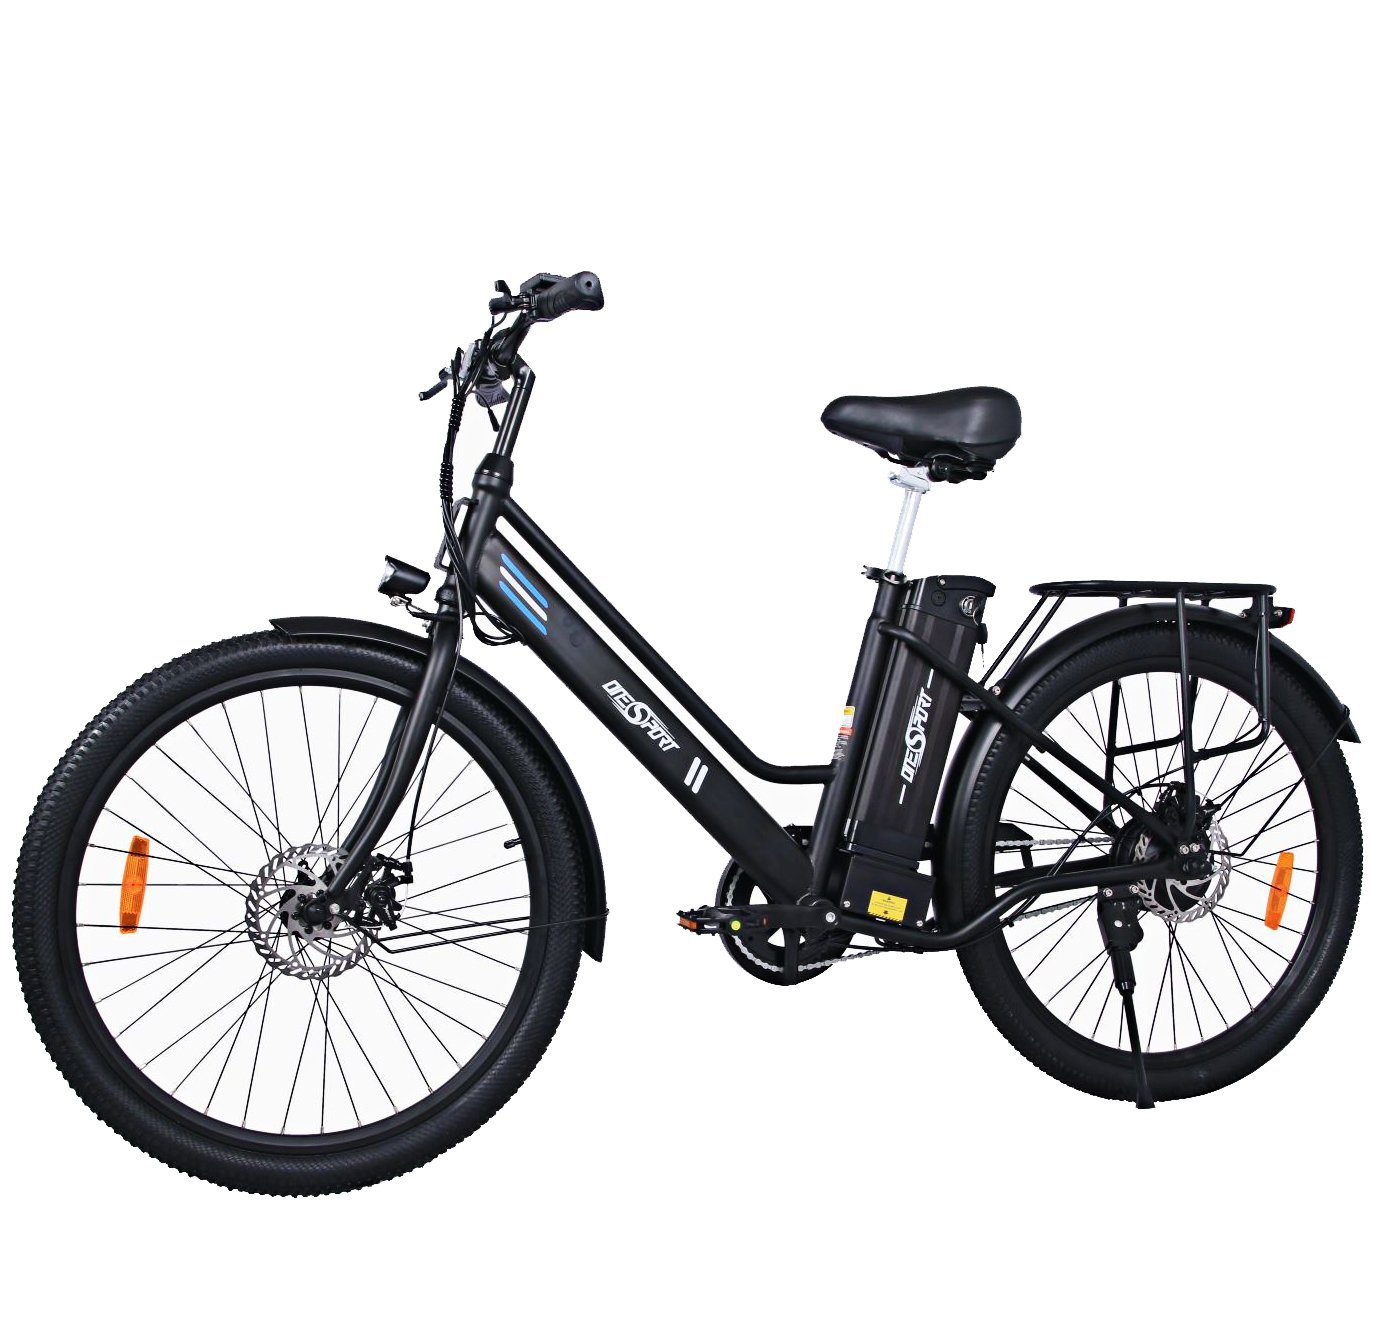 Fangqi E-Bike E-Bike 26 Zoll Elektrofahrrad,Citybike,Pedelec, 36V/14,4Ah akku,25KM/H, 250W Heckmotor, (spar-set,E-Mountainbike, E-Dirtbike, MTB(Optionaler Gashebel: Nach dem Einbau des Gashebels kann ein rein elektrischer Modus erreicht werden, Fahrmodi: Pedal-Modus und Power-Assist-Modus), Citybikes, Smartbikes, Elektrofahrräder für Damen und Herren), Datendisplay, Lithium-Ionen-Akku, Höhenverstellbare Sattelstütze schwarz